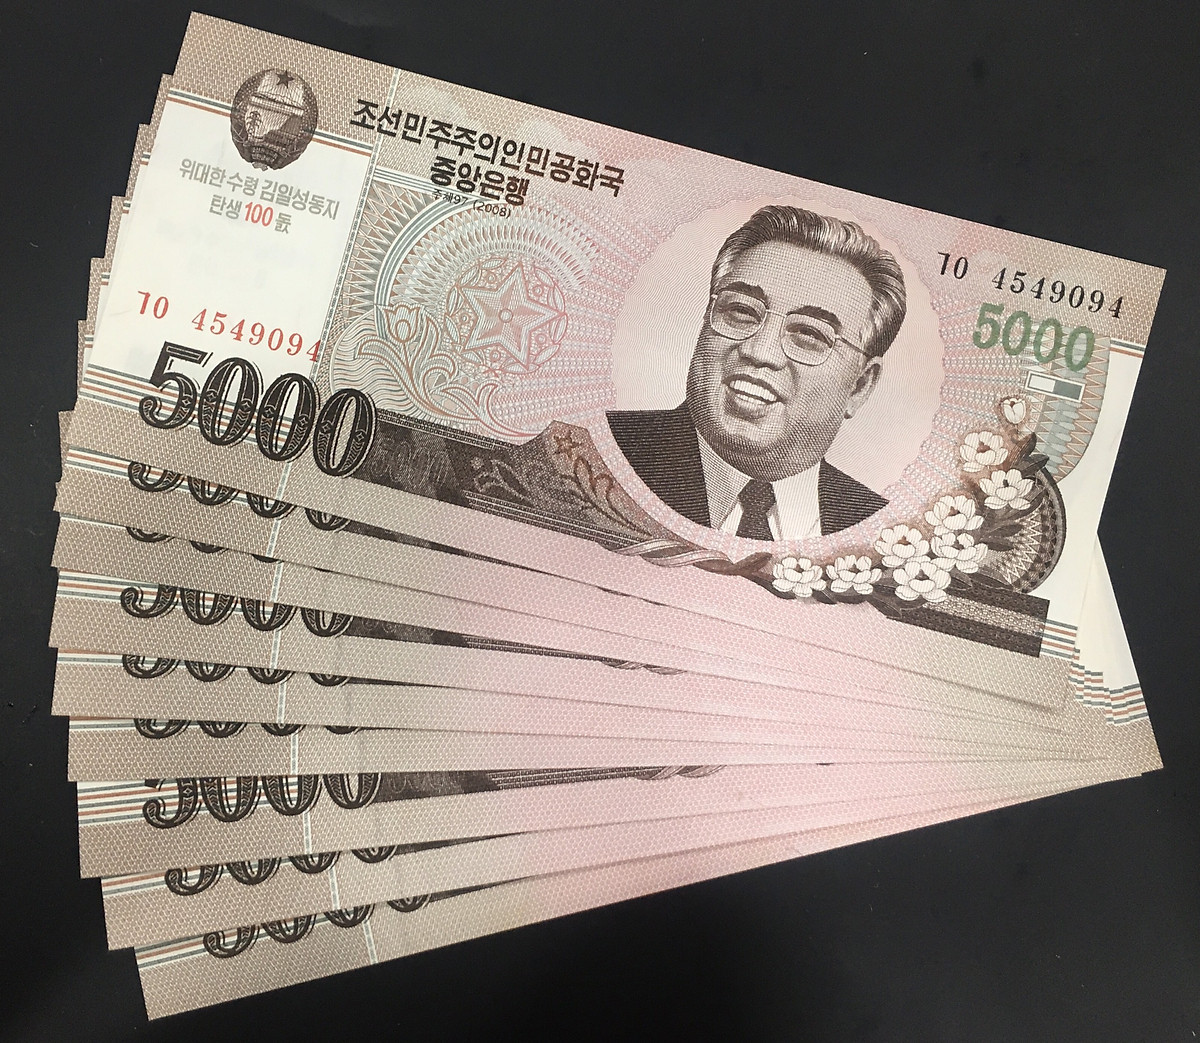 Bạn có thể đổi Won Triều Tiên sang tiền Việt Nam tại ngân hàng nếu có nhu cầu